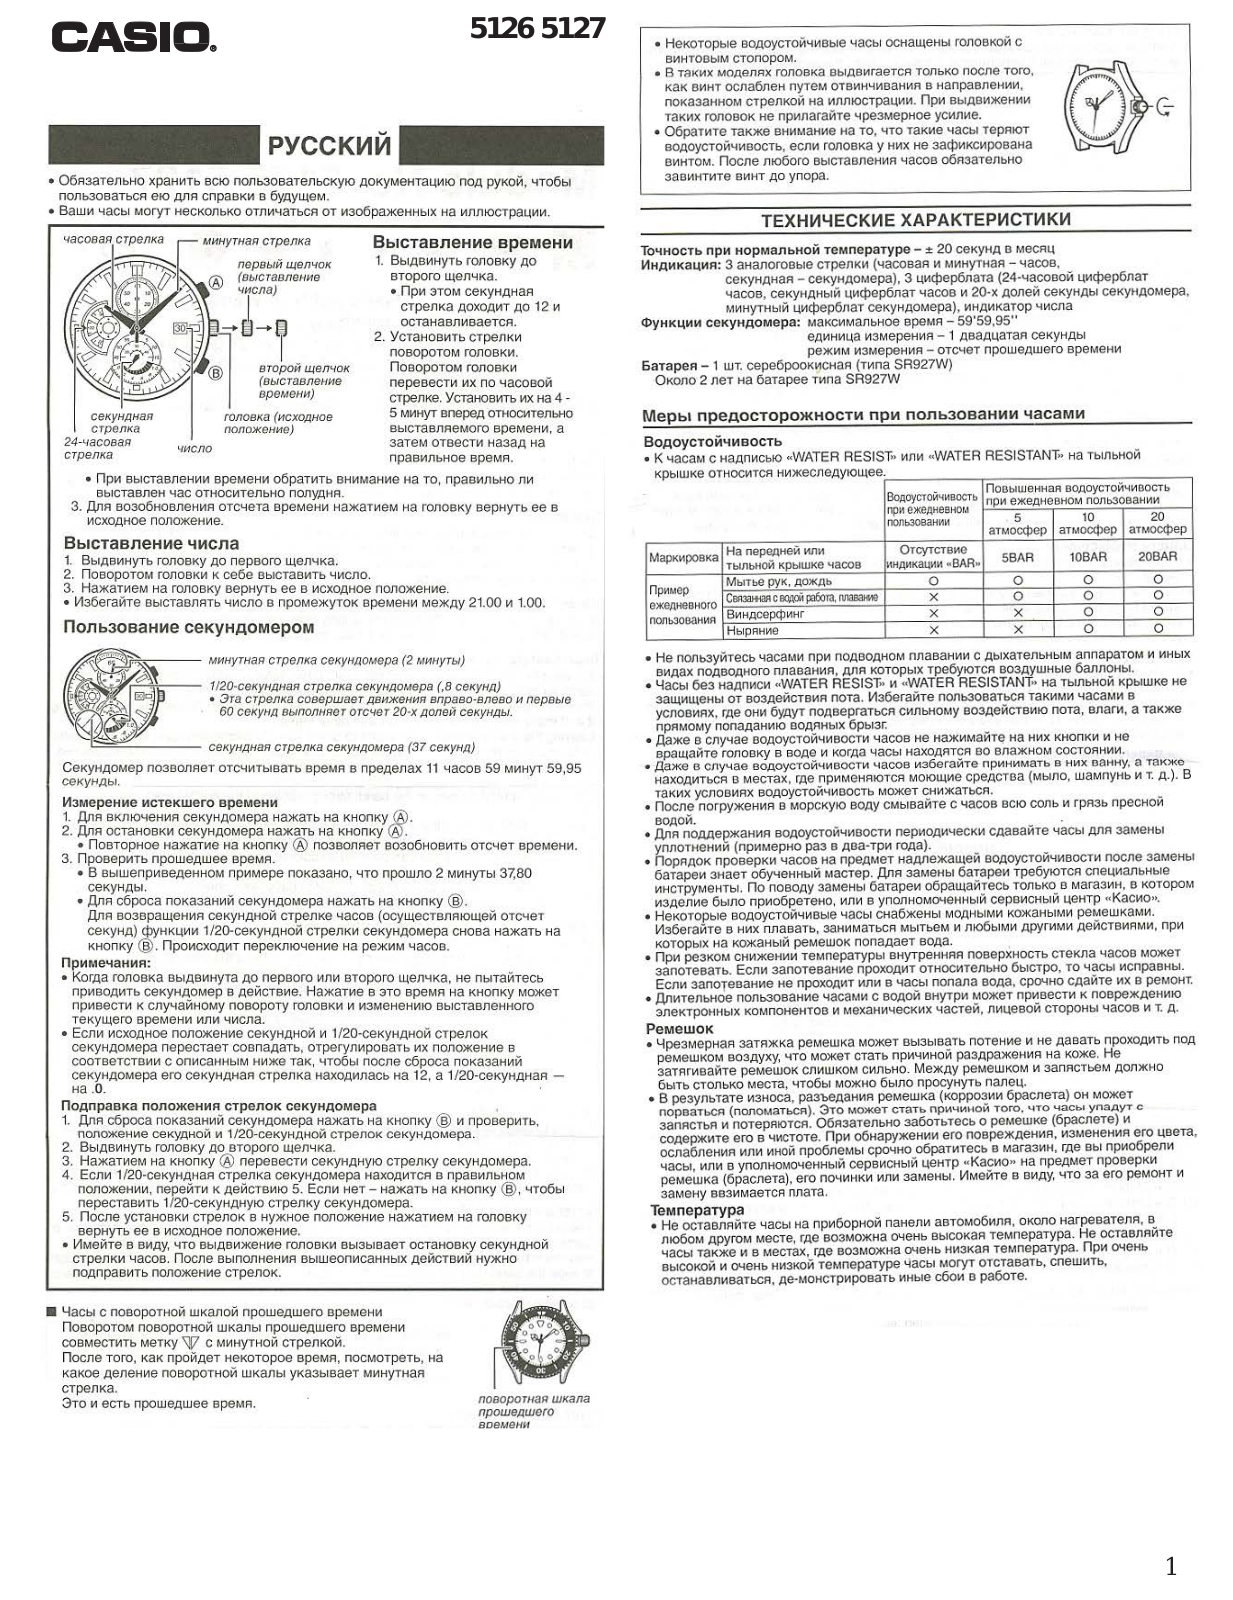 CASIO EF-543 User Manual